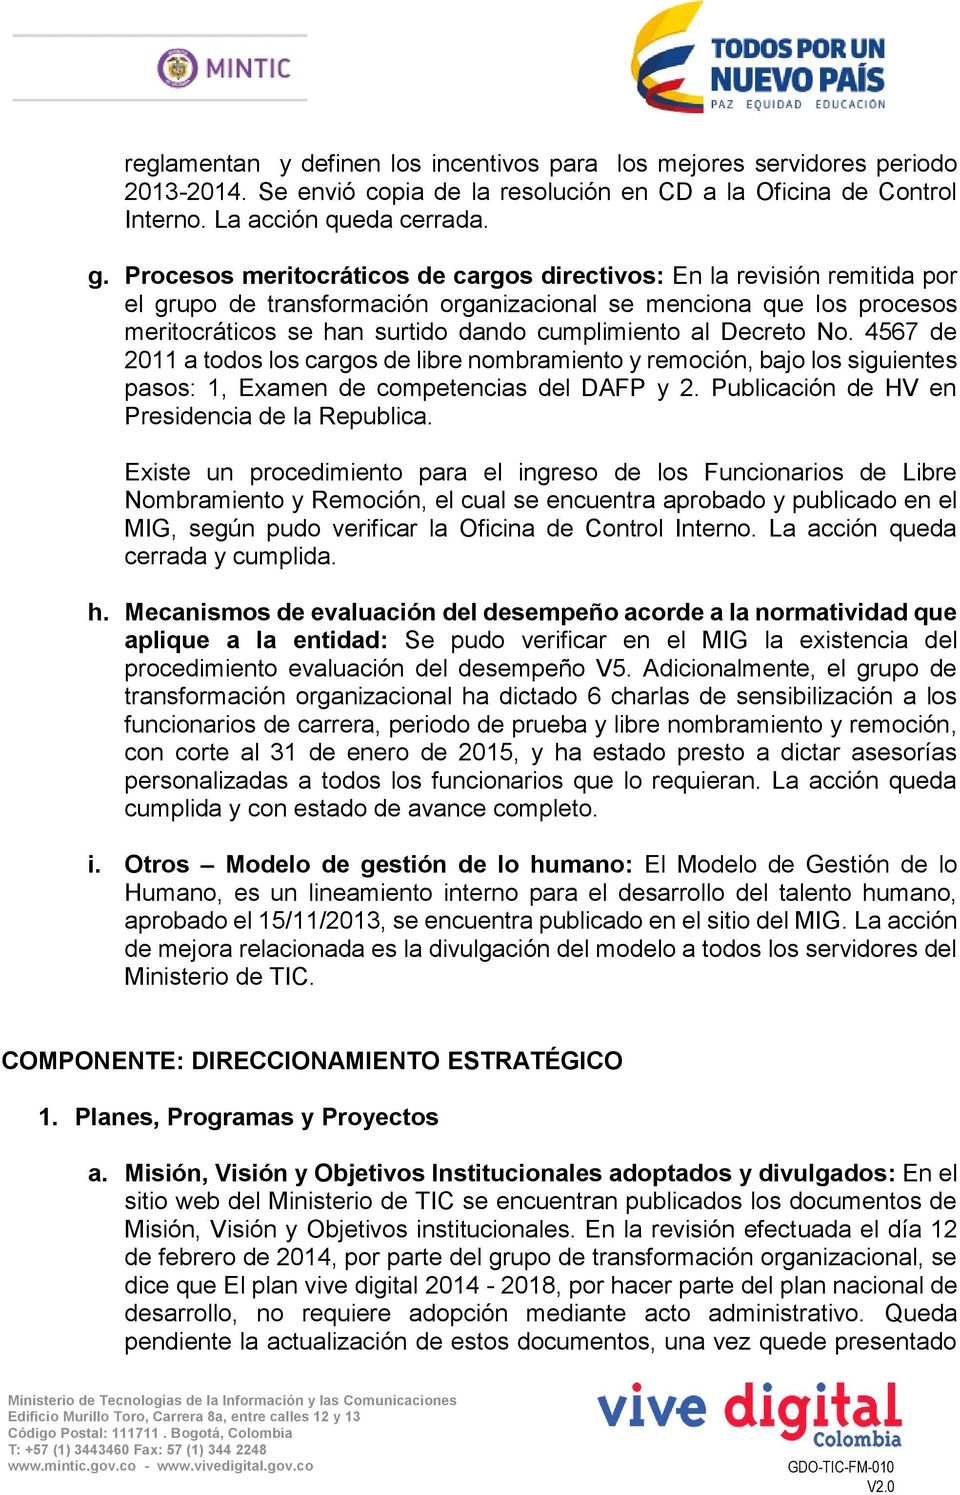 Decreto No. 4567 de 2011 a todos los cargos de libre nombramiento y remoción, bajo los siguientes pasos: 1, Examen de competencias del DAFP y 2. Publicación de HV en Presidencia de la Republica.